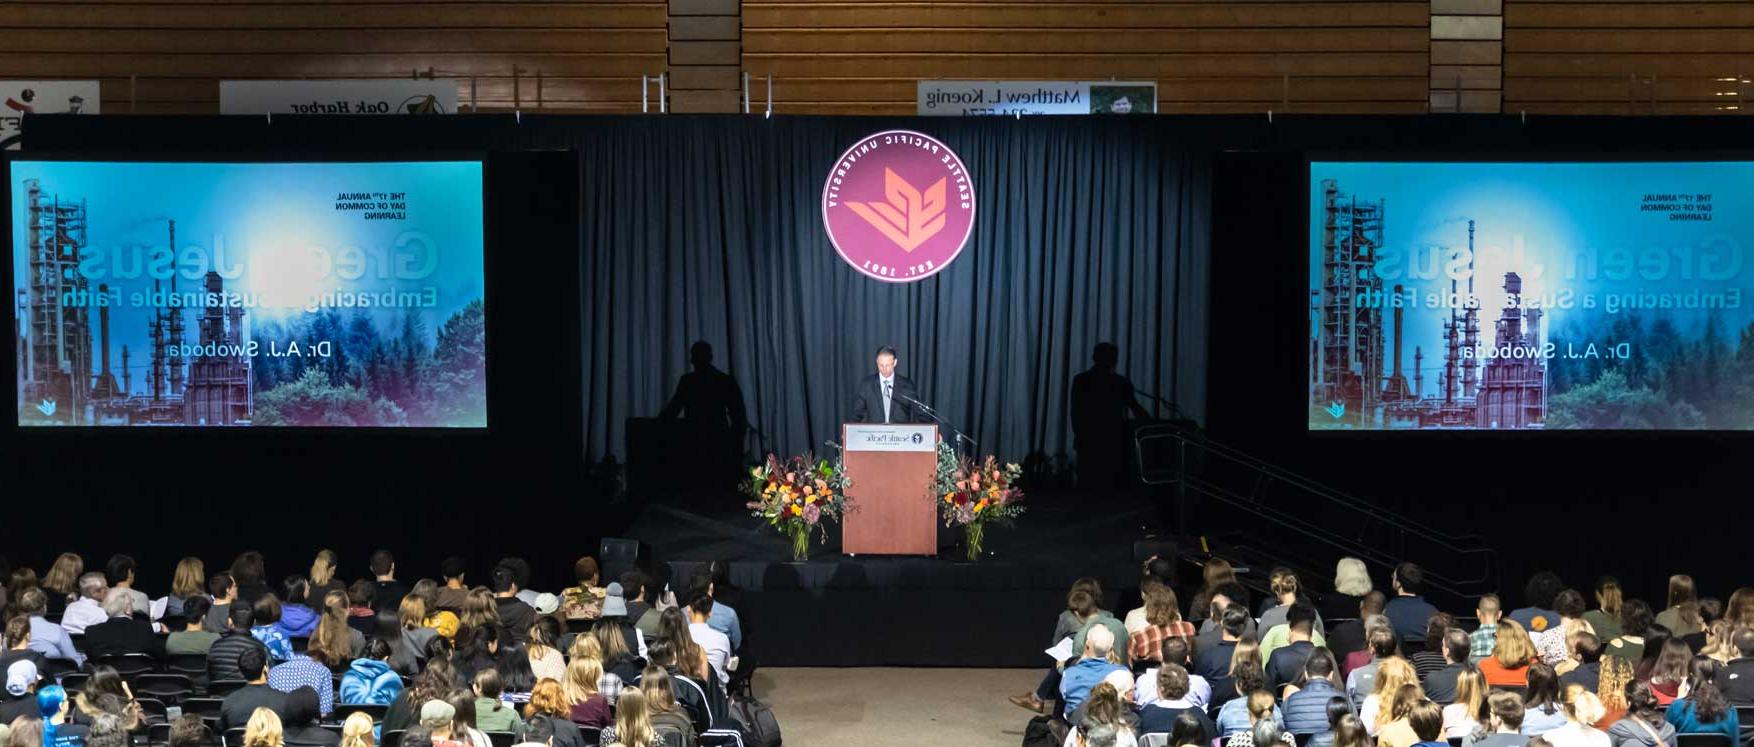 8 | 西雅图 Pacific University spu.作者A.J. Swoboda spoke about creation care at the Day of Common Learning.